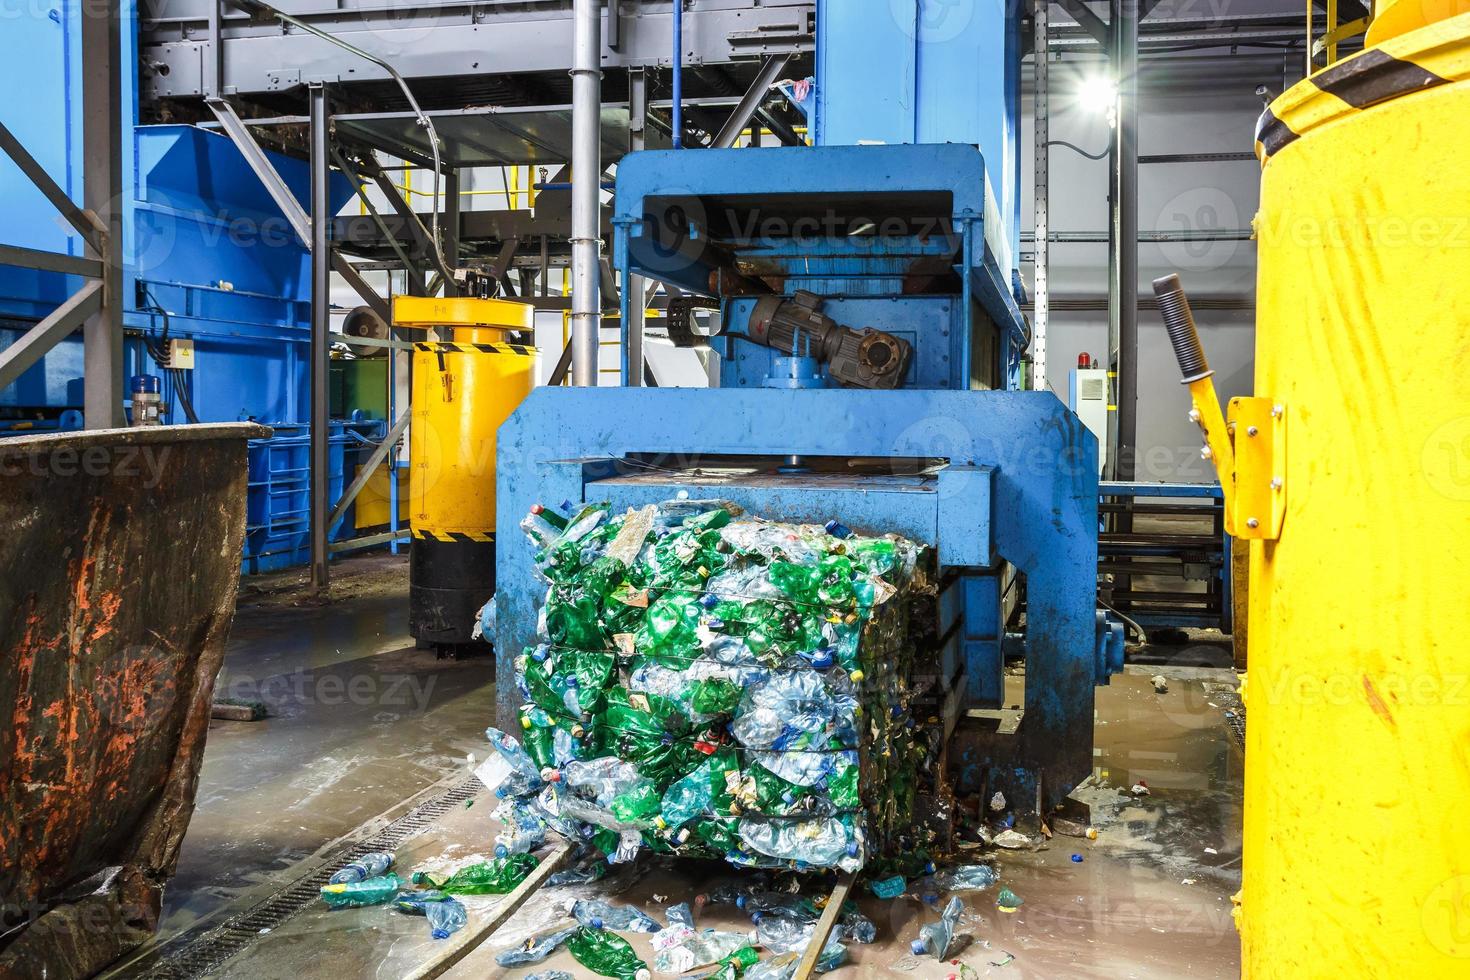 coleta de lixo separada. equipamento para prensagem de materiais de triagem de detritos para serem processados em uma moderna usina de reciclagem de resíduos. foto